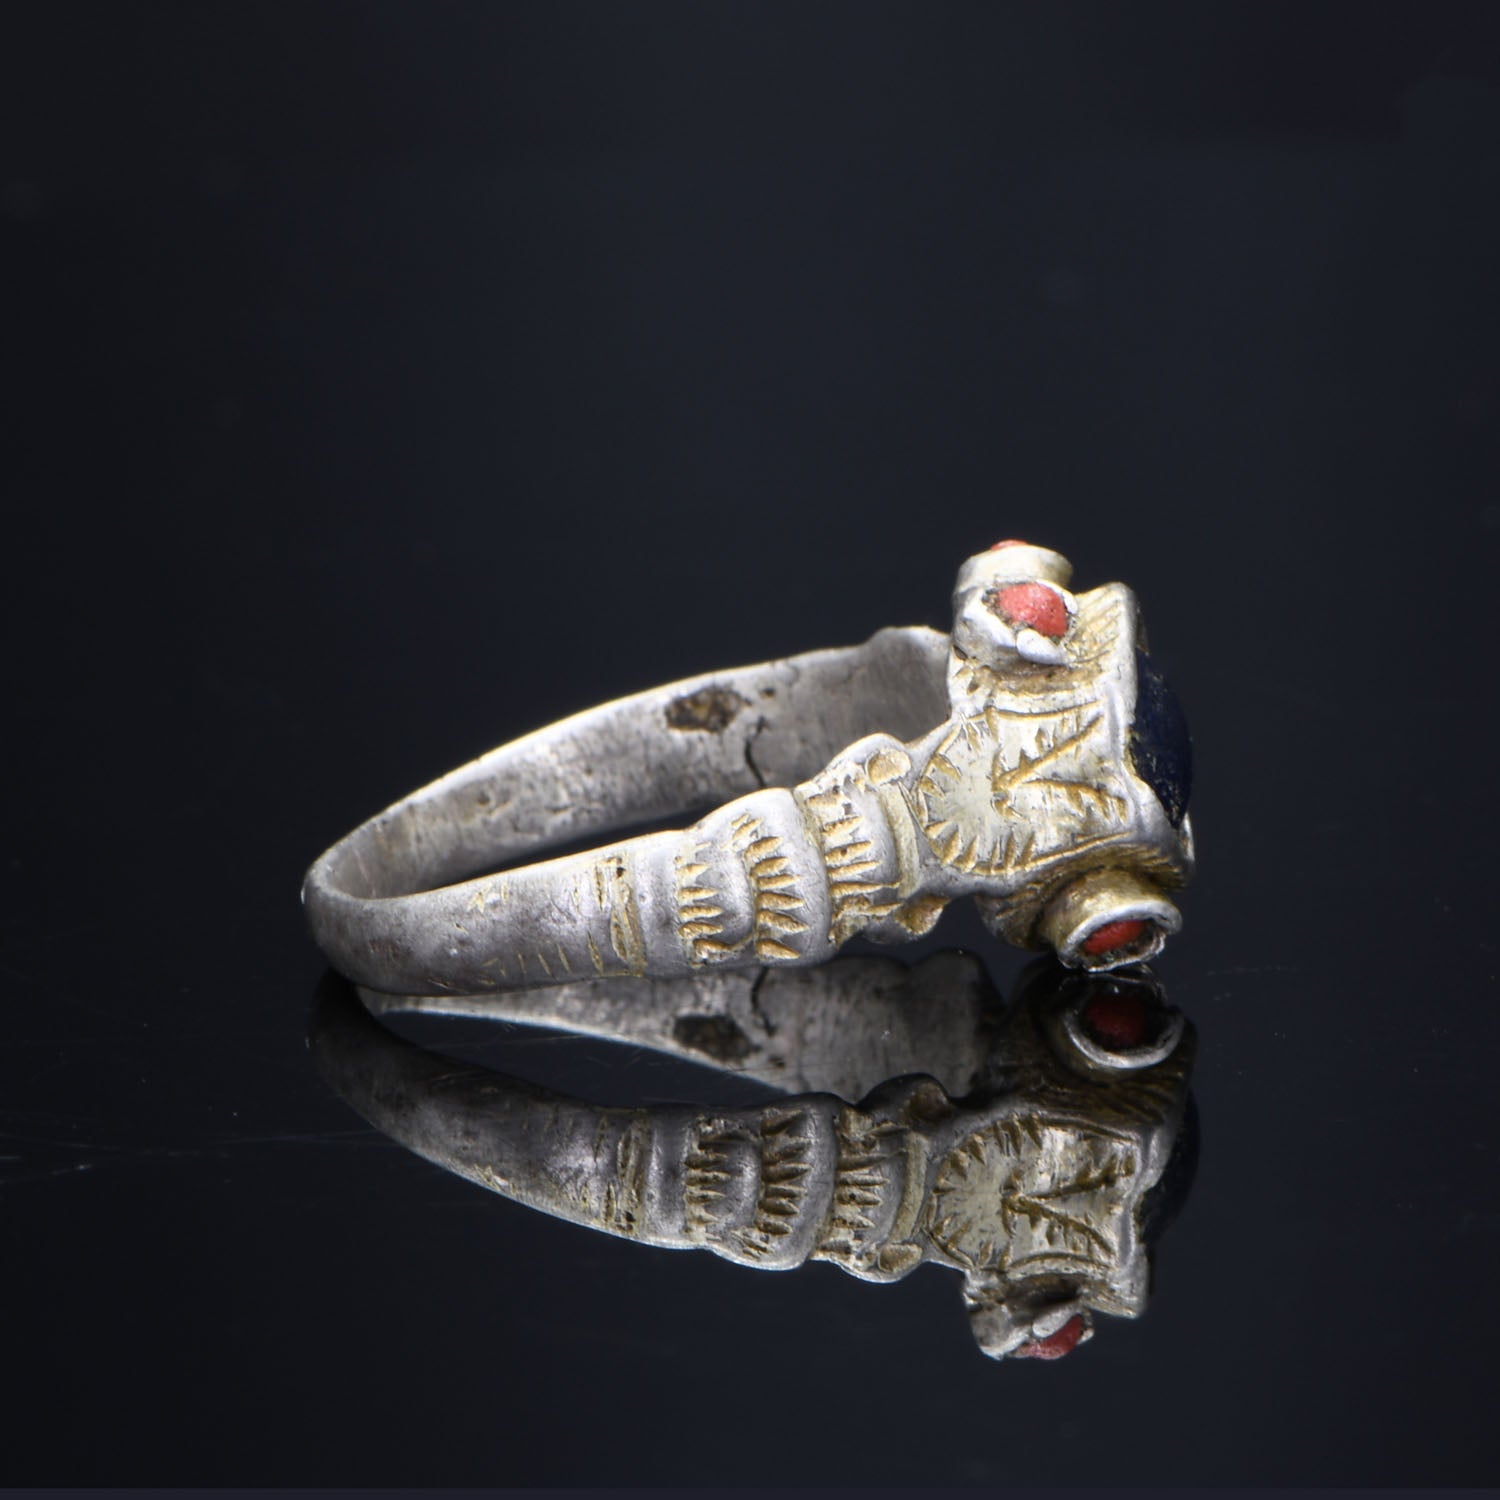 A Medieval Silver Gilt Ring with Stones, <br><em>ca. 1100 - 1300 CE</em>